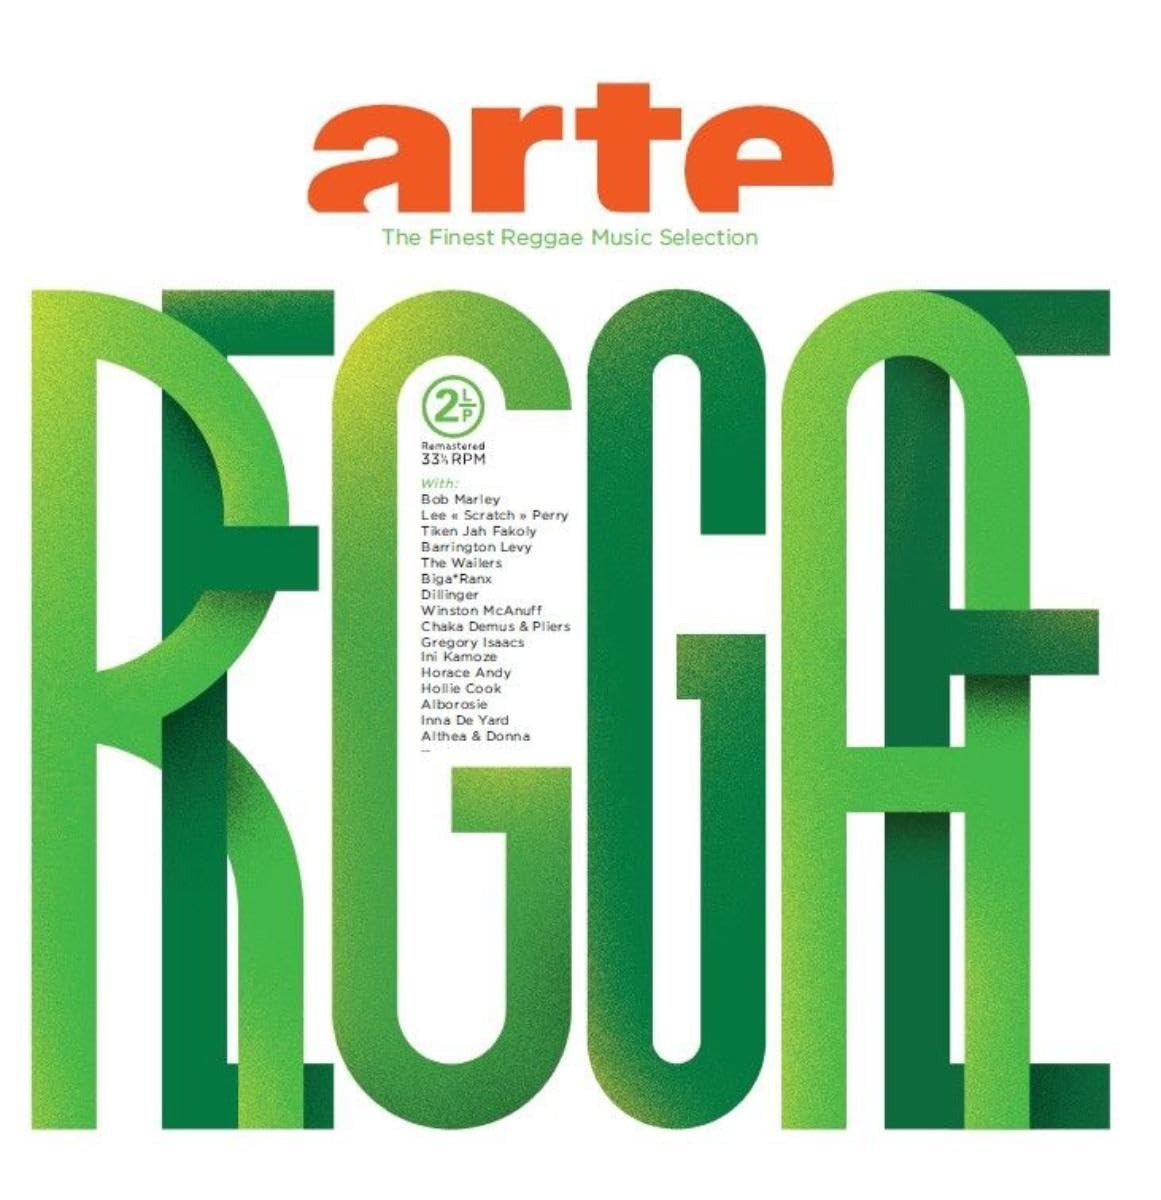 CD Shop - V/A ARTE REGGAE